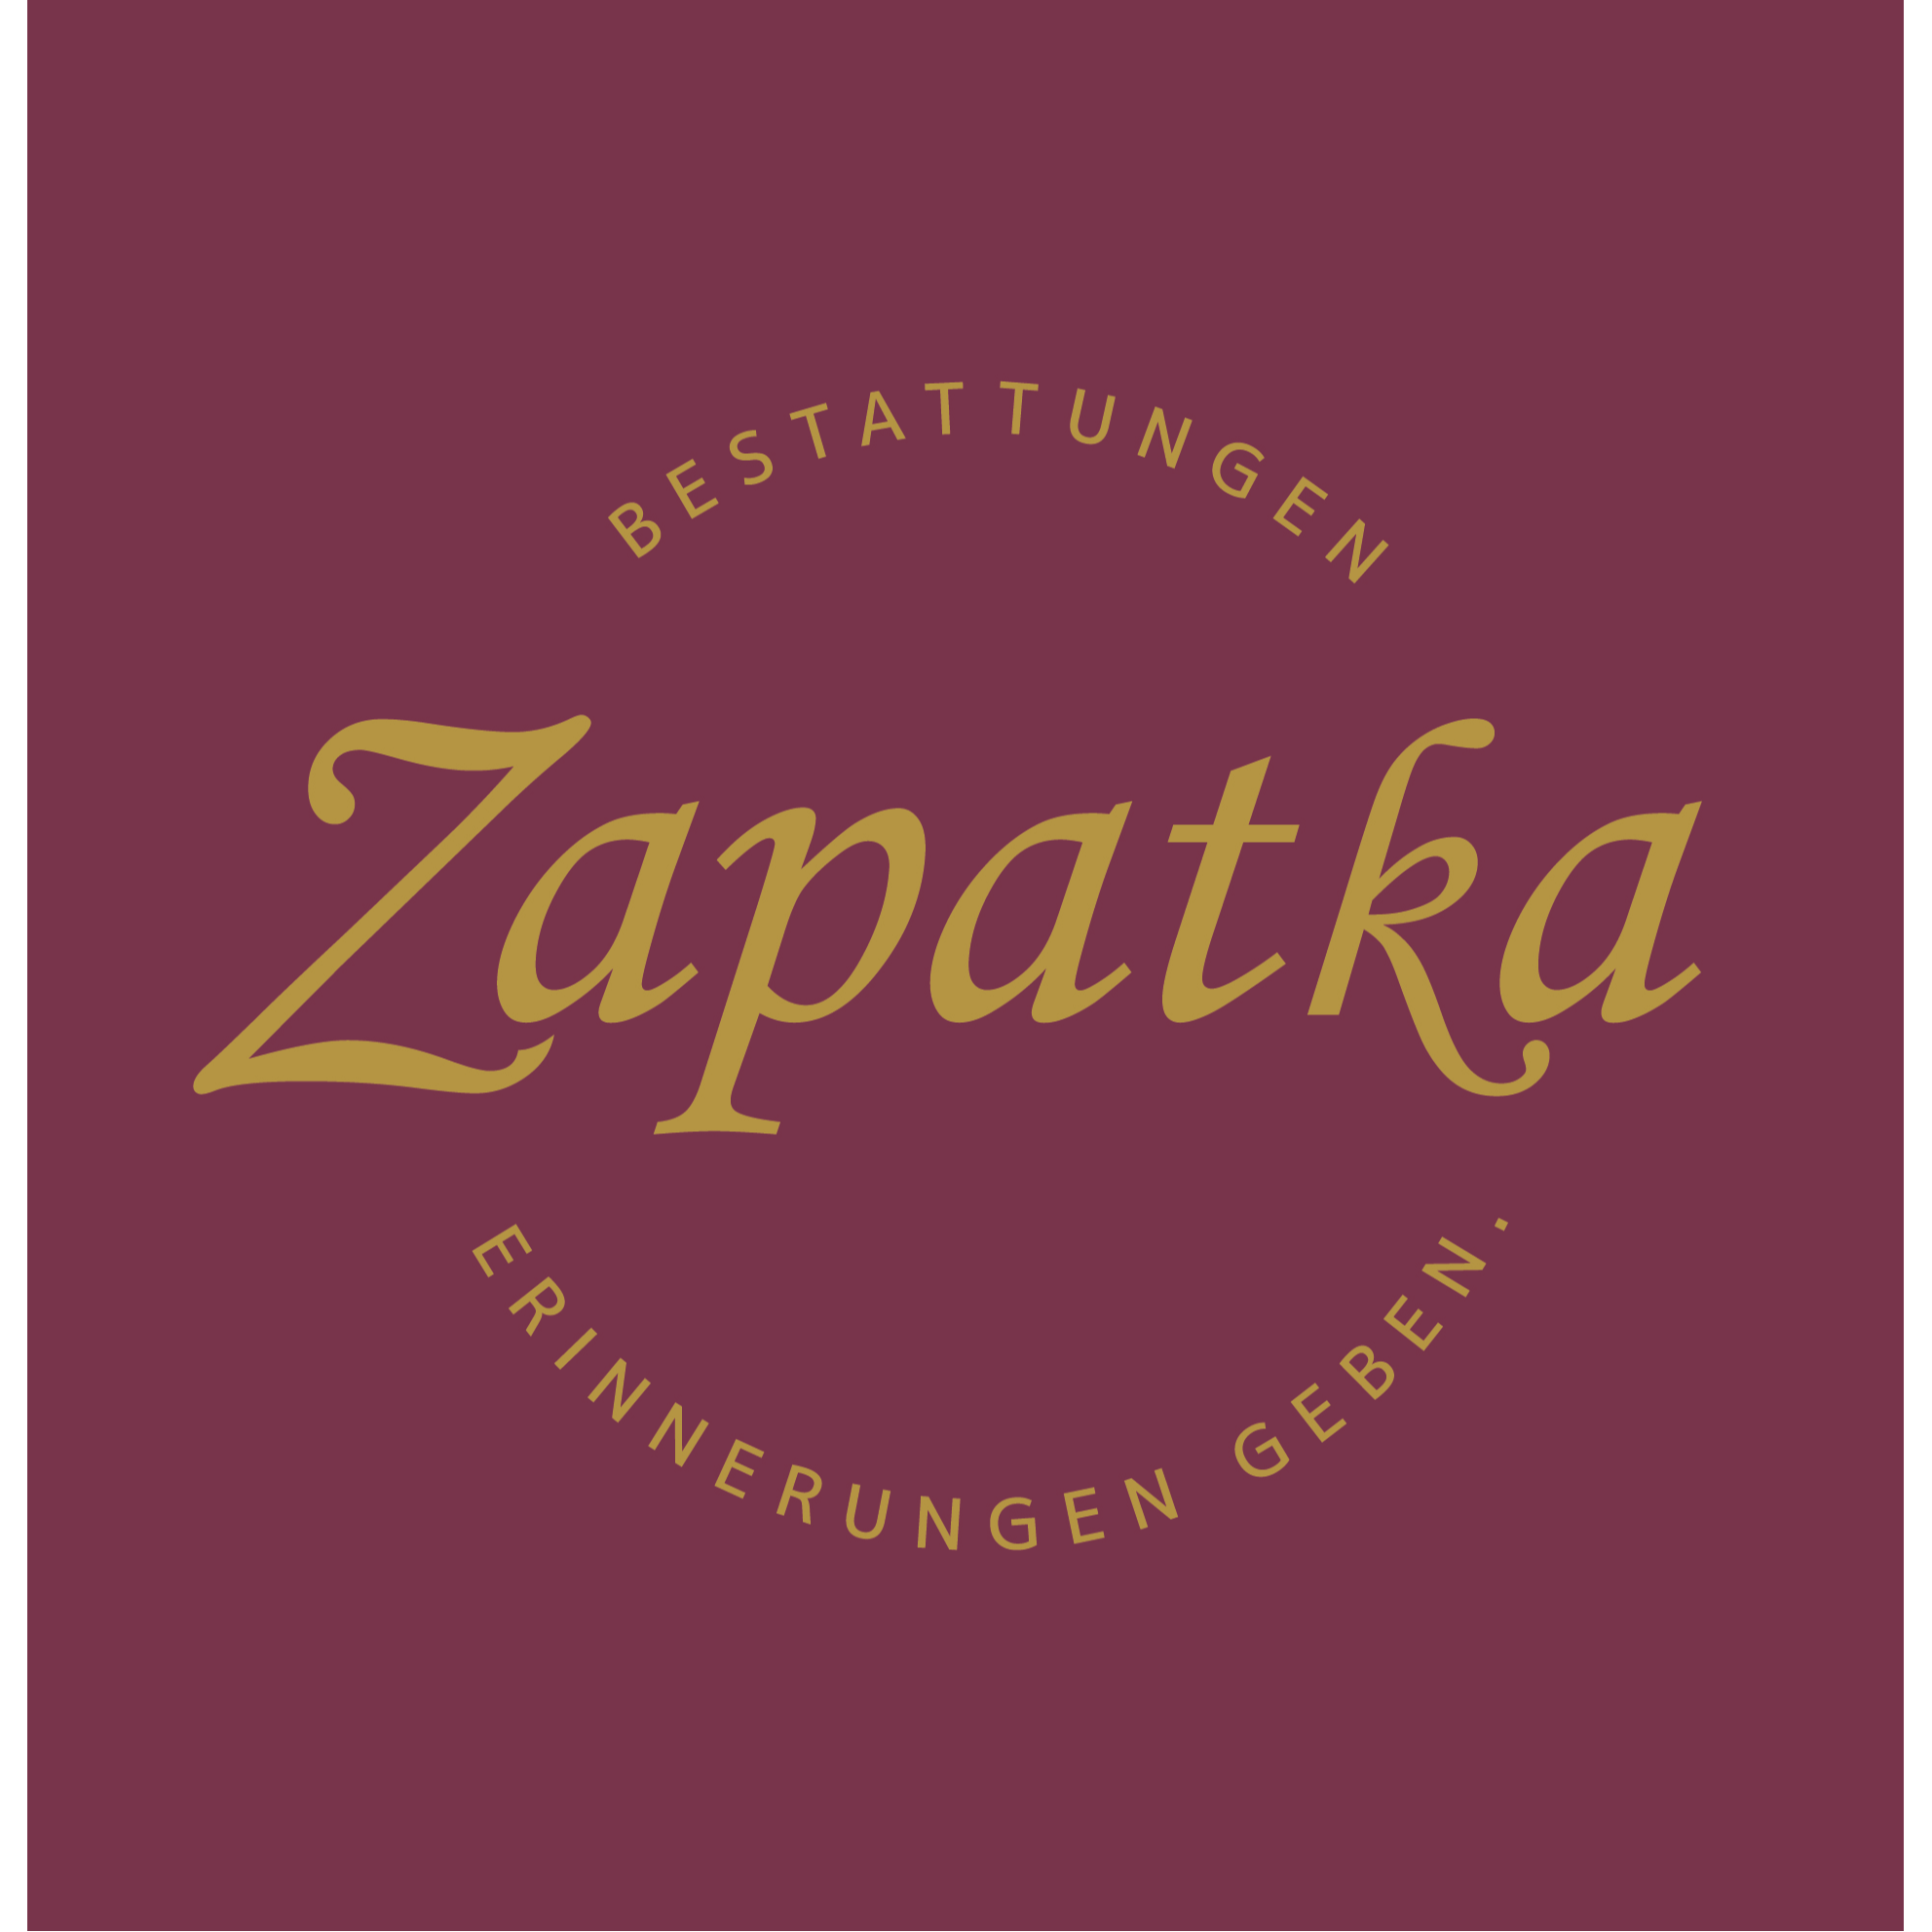 Bestattungen Zapatka in Mudersbach an der Sieg - Logo